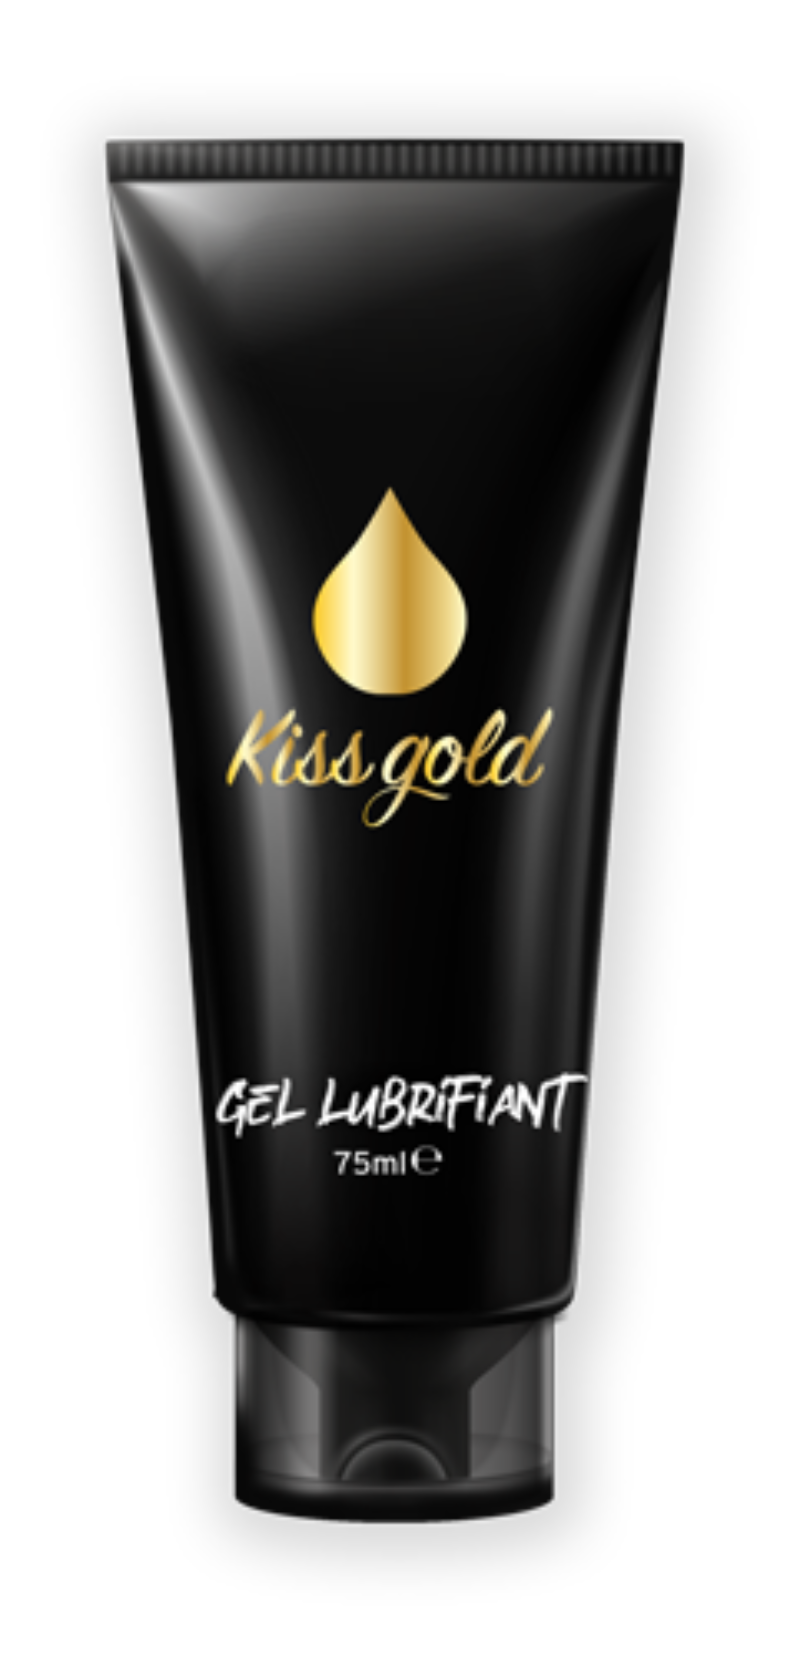 Gel Kiss Gold gel lubrifiant